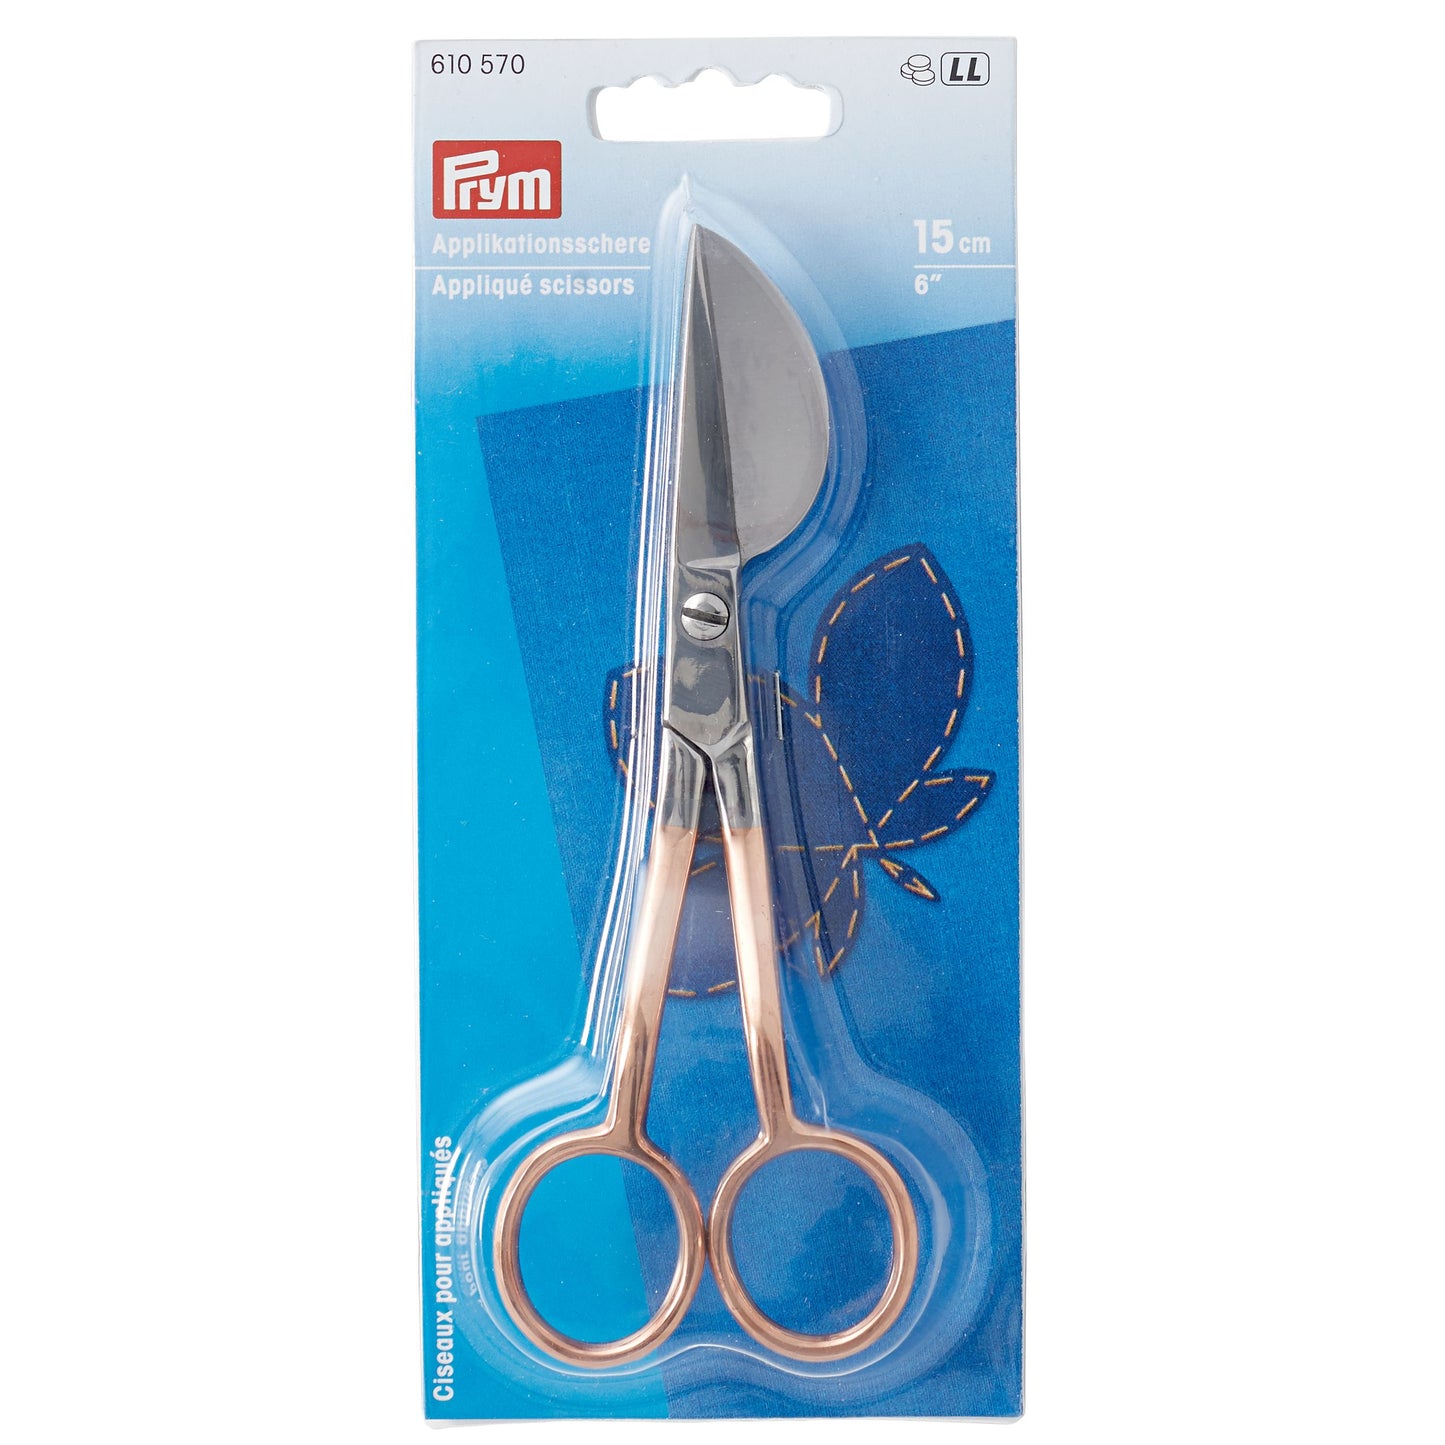 Applique scissors 15 cm rose gold